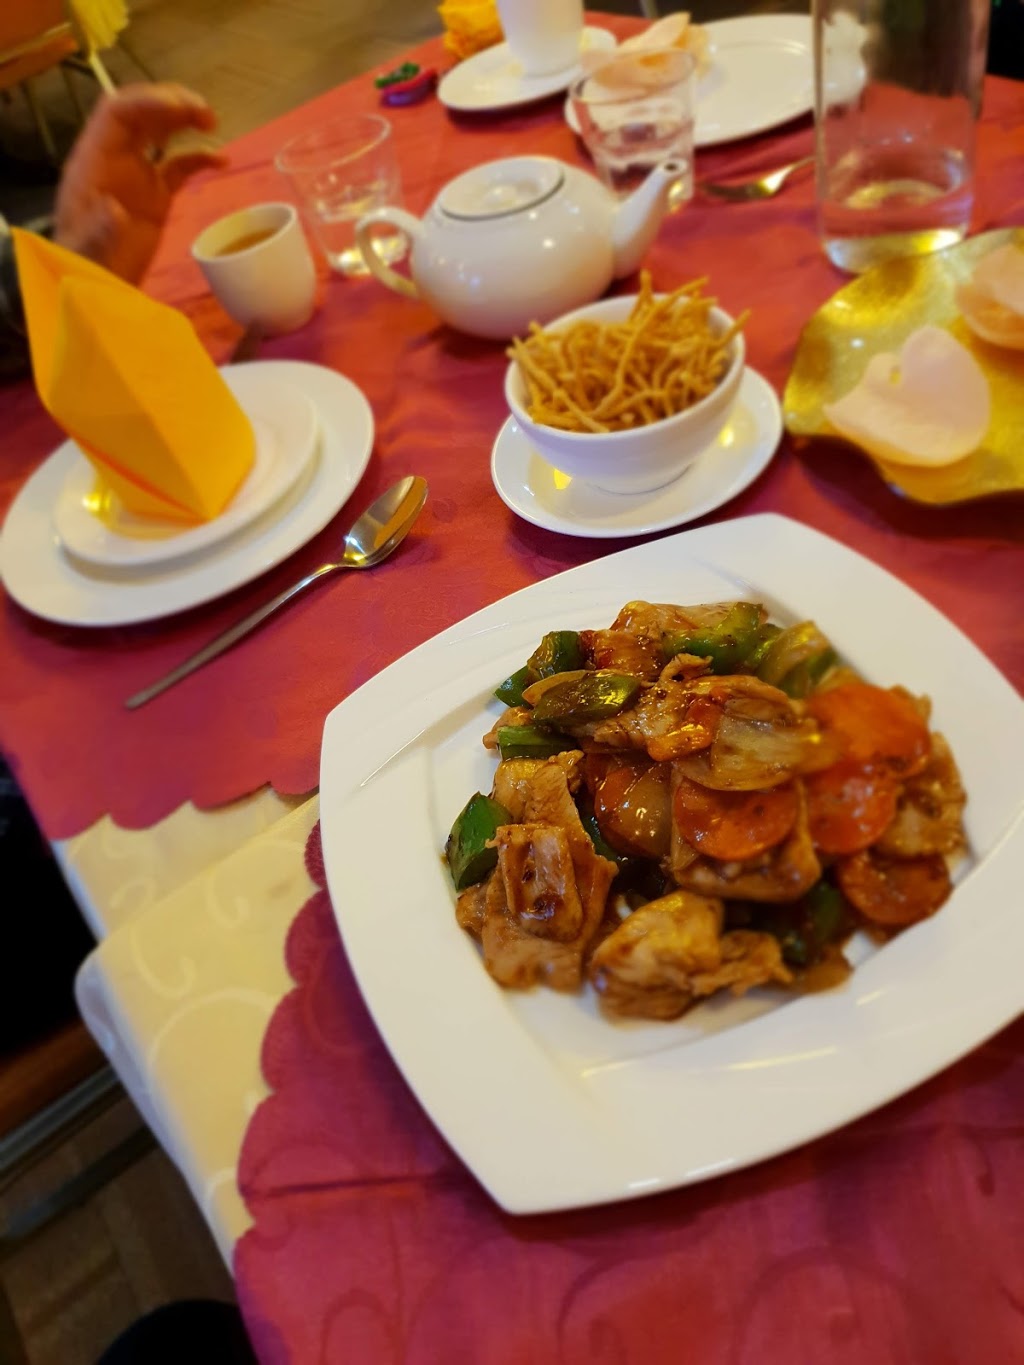 Mr. Ho Chinese Restaurant | restaurant | 240 Ocean Keys Blvd, Clarkson WA 6030, Australia | 0894077188 OR +61 8 9407 7188